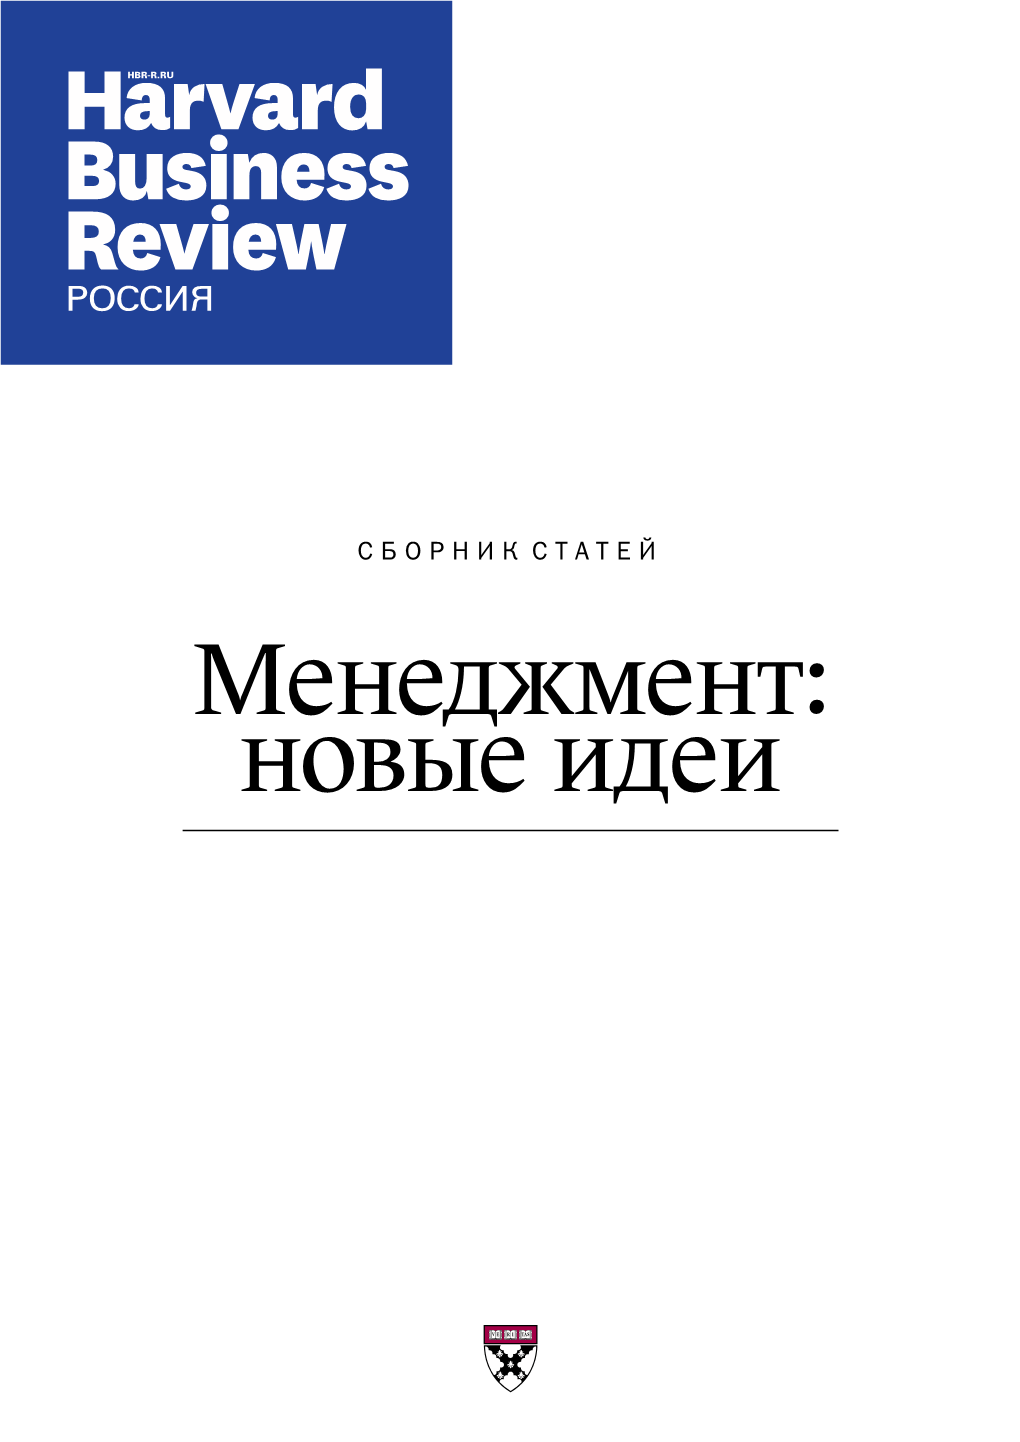 Менеджмент: Новые Идеи Harvard Business Review — Россия Содержание